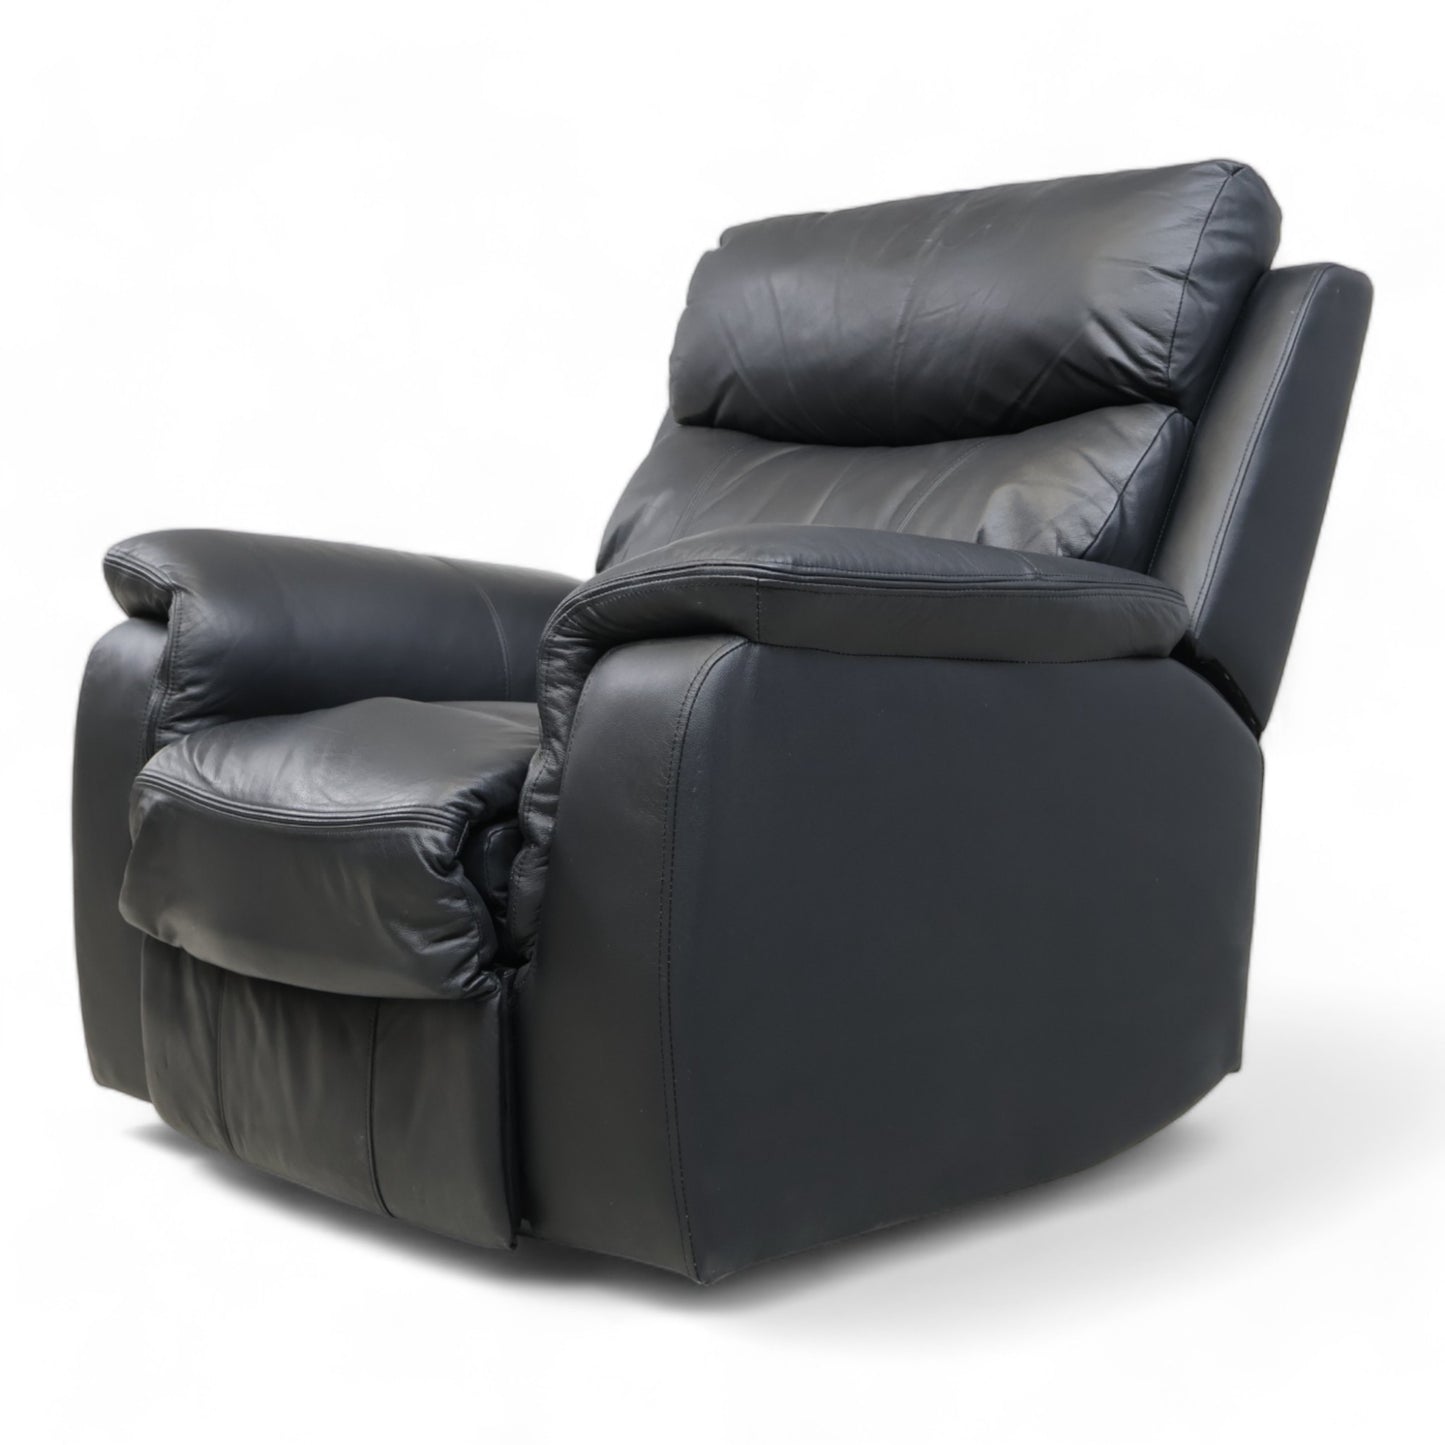 Nyrenset | Mayfield recliner lenestol fra A-Møbler i sort hud/PVC